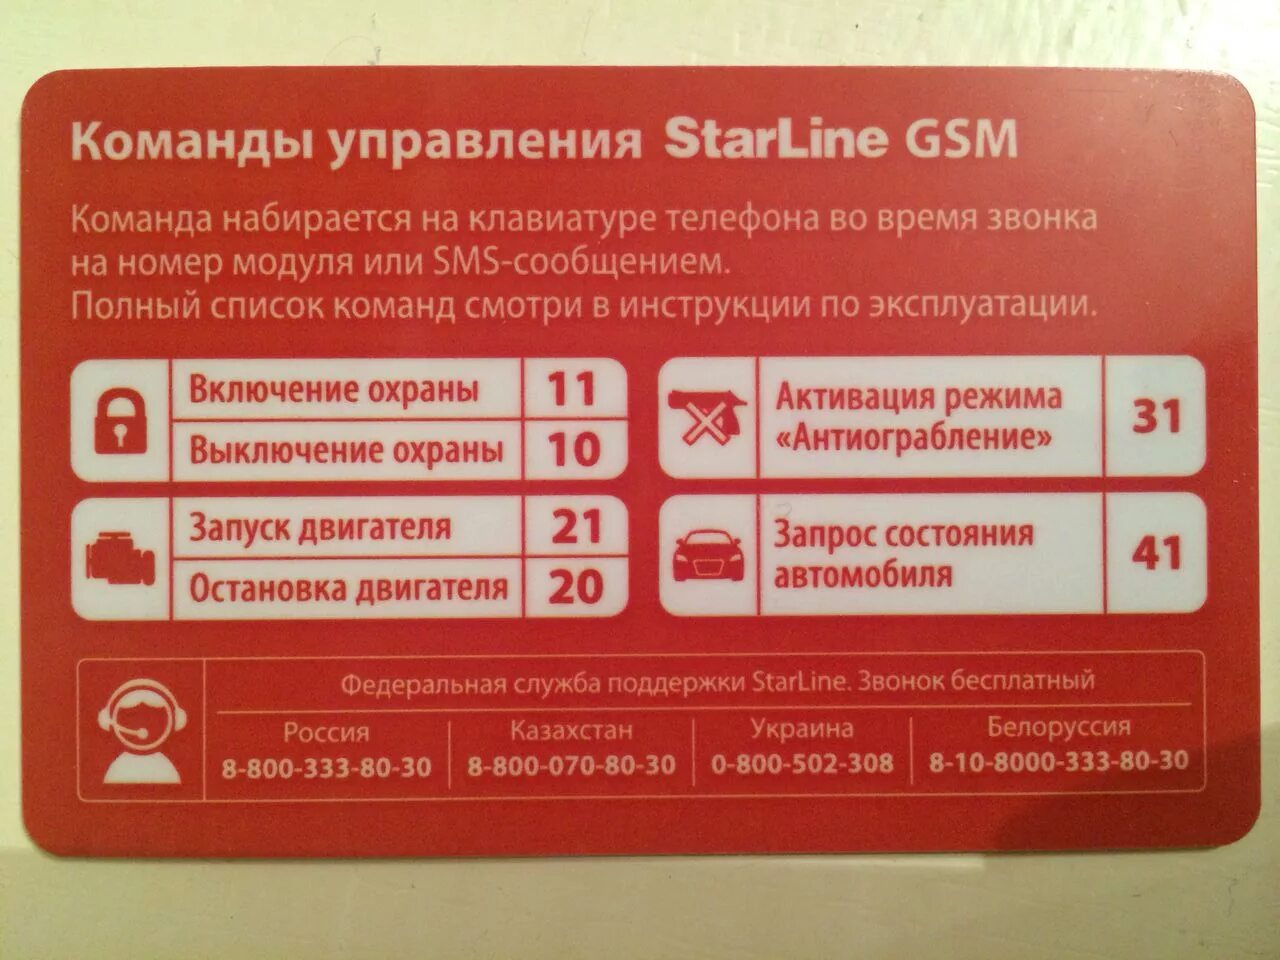 Открой навык starline. Старлайн а93 GSM модуль. Коды команд старлайн GSM а93. SMS команды STARLINE a93. Komandi upravleniya STARLINE GSM а93.